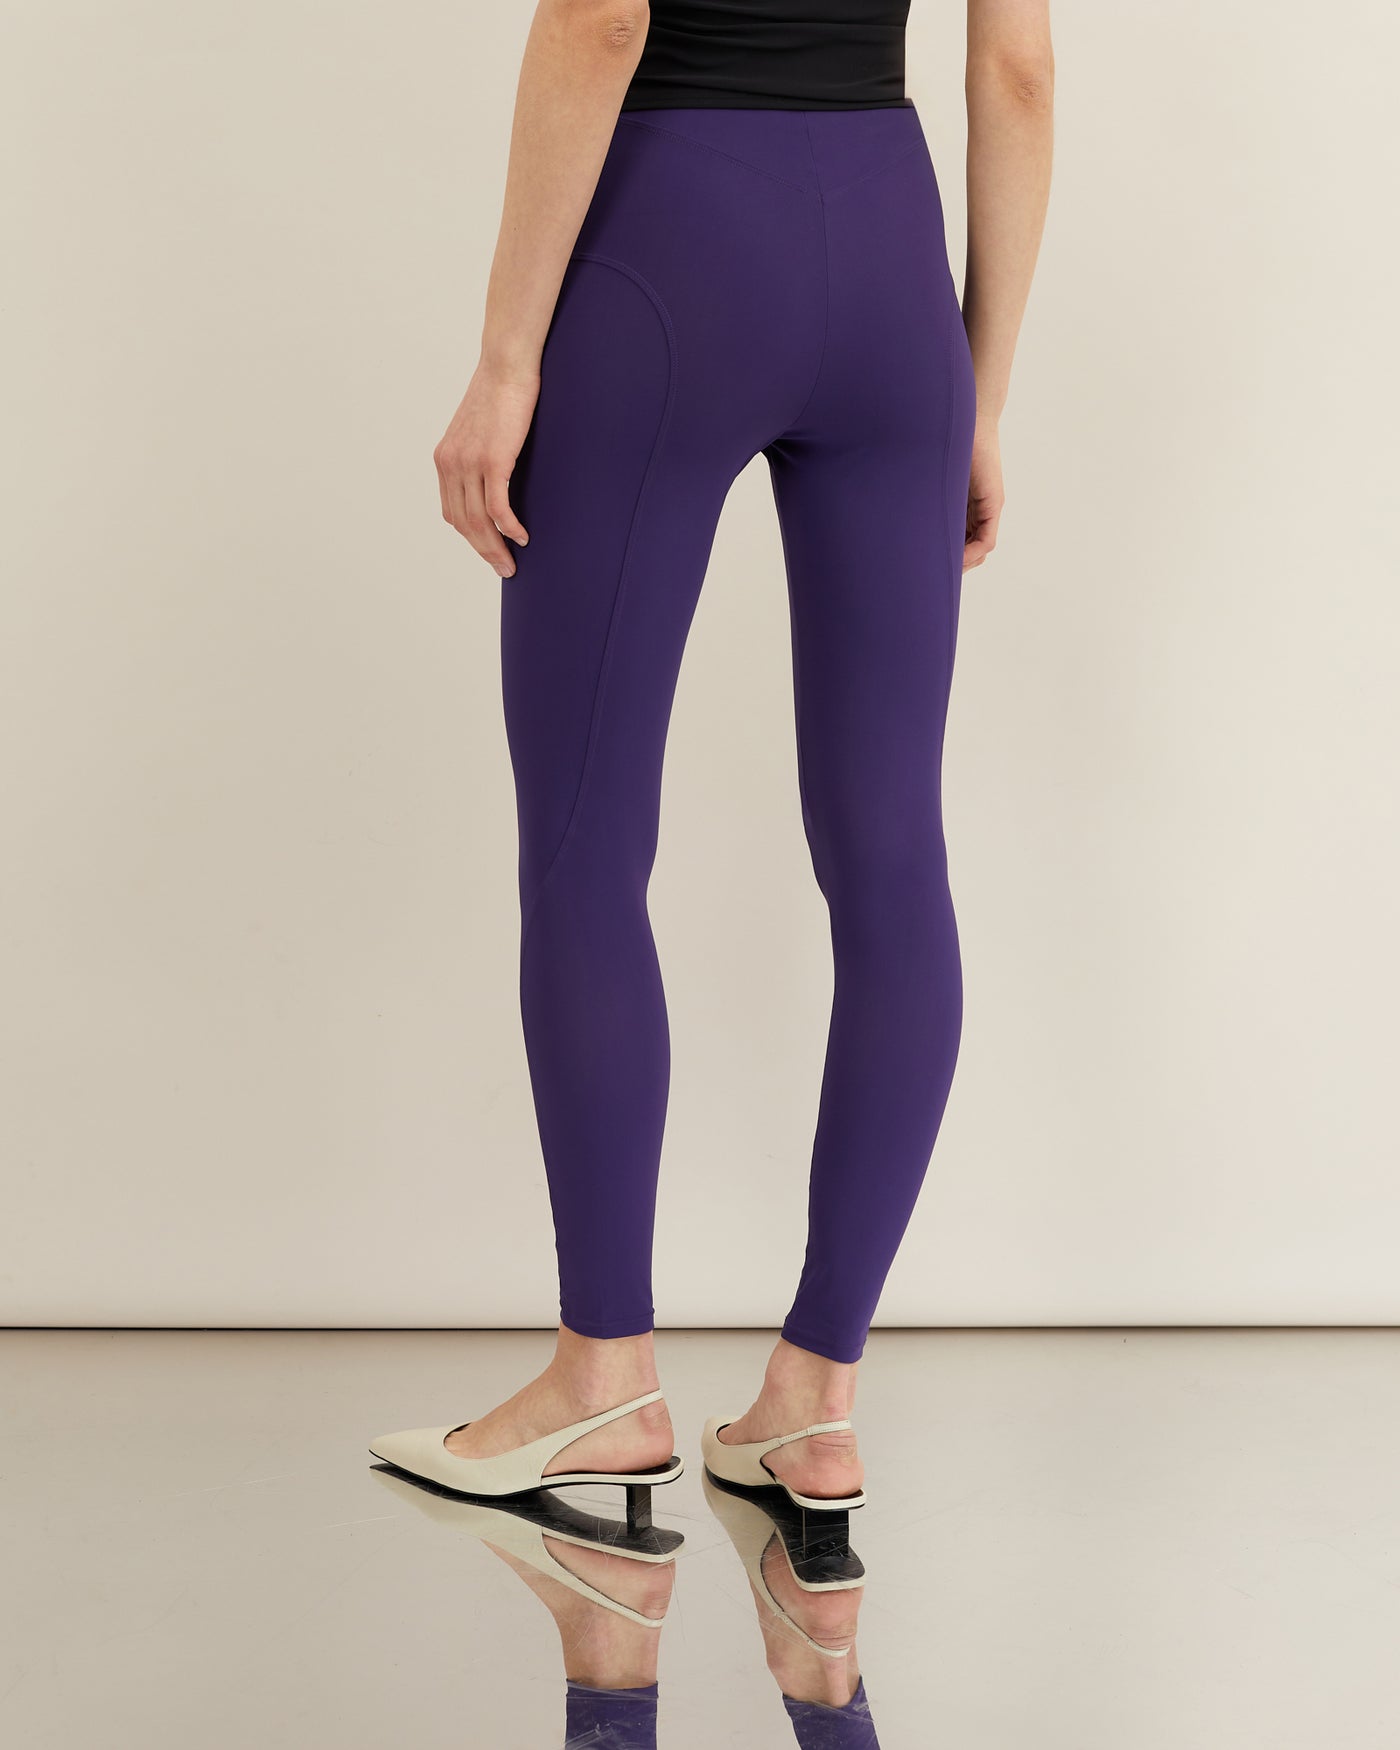 Legging sport violet 16